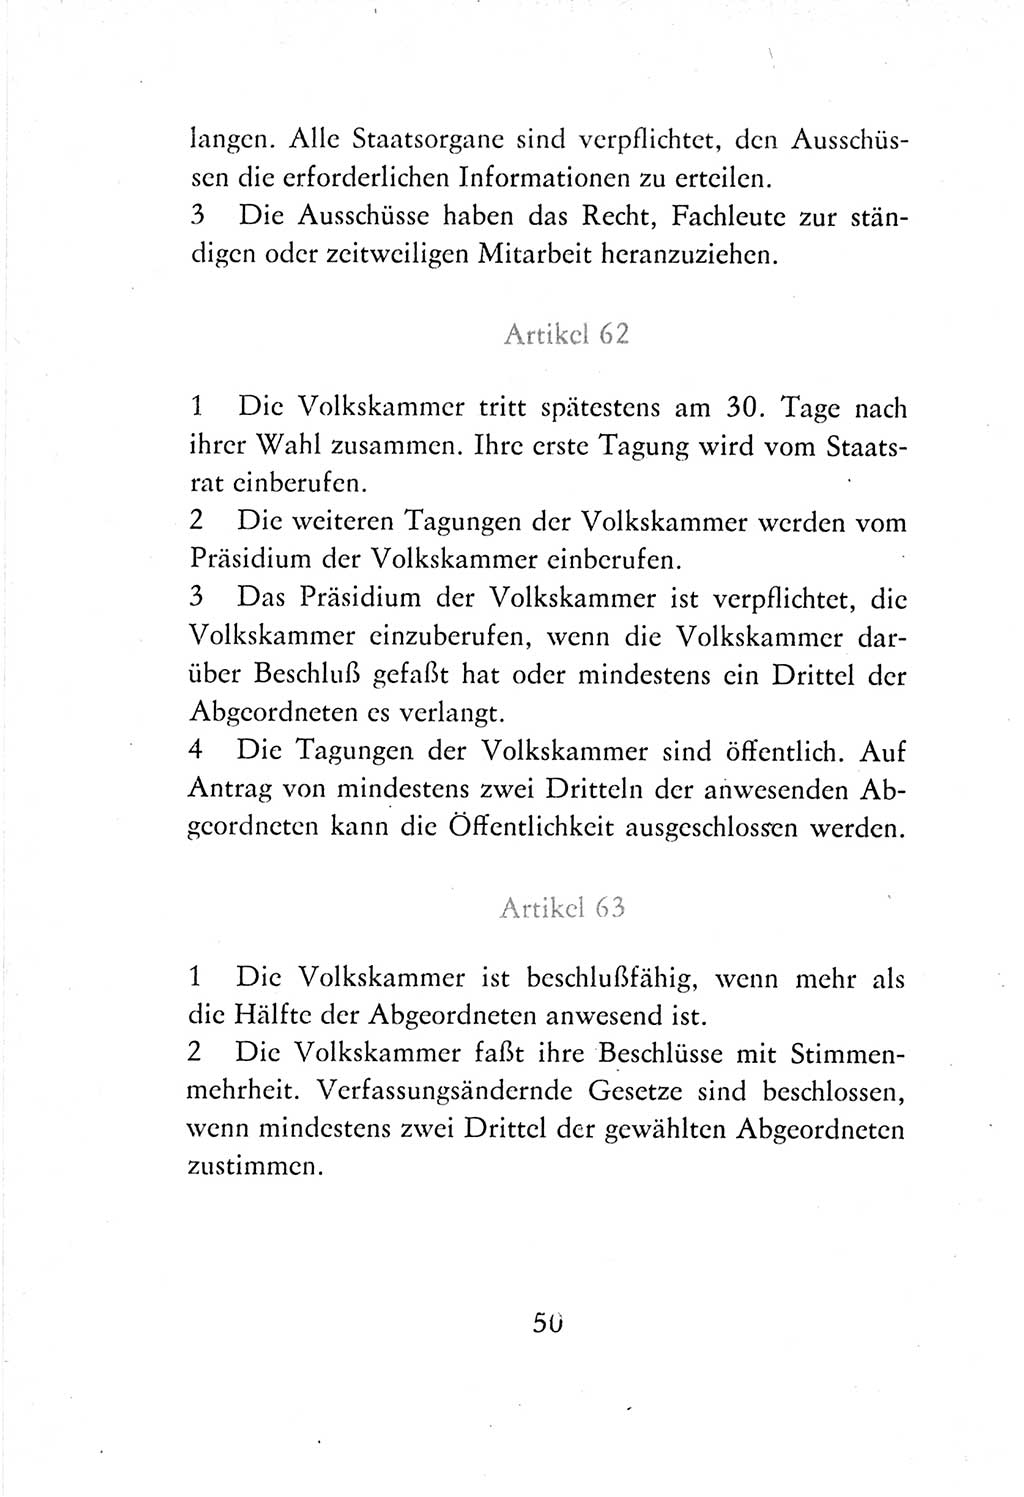 Verfassung der Deutschen Demokratischen Republik (DDR) vom 7. Oktober 1974, Seite 50 (Verf. DDR 1974, S. 50)